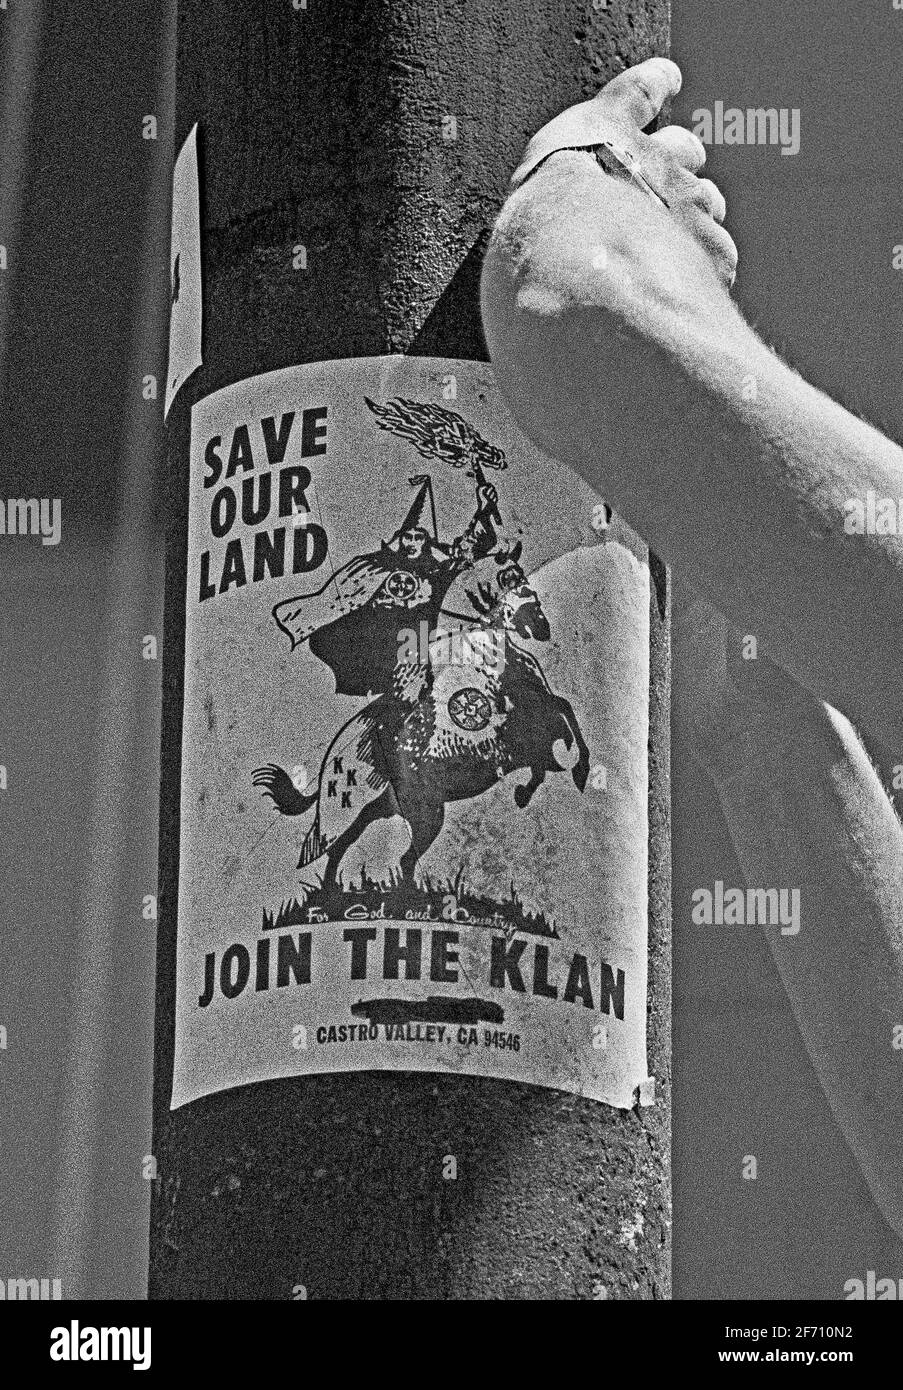 Rette unser Land und schließe dich dem Klan-Plakat am Mast in San Francisco, Kalifornien, an, während einer Kundgebung, die gegen Rassismus beim Militär protestiert, am 27. August 1977 Stockfoto